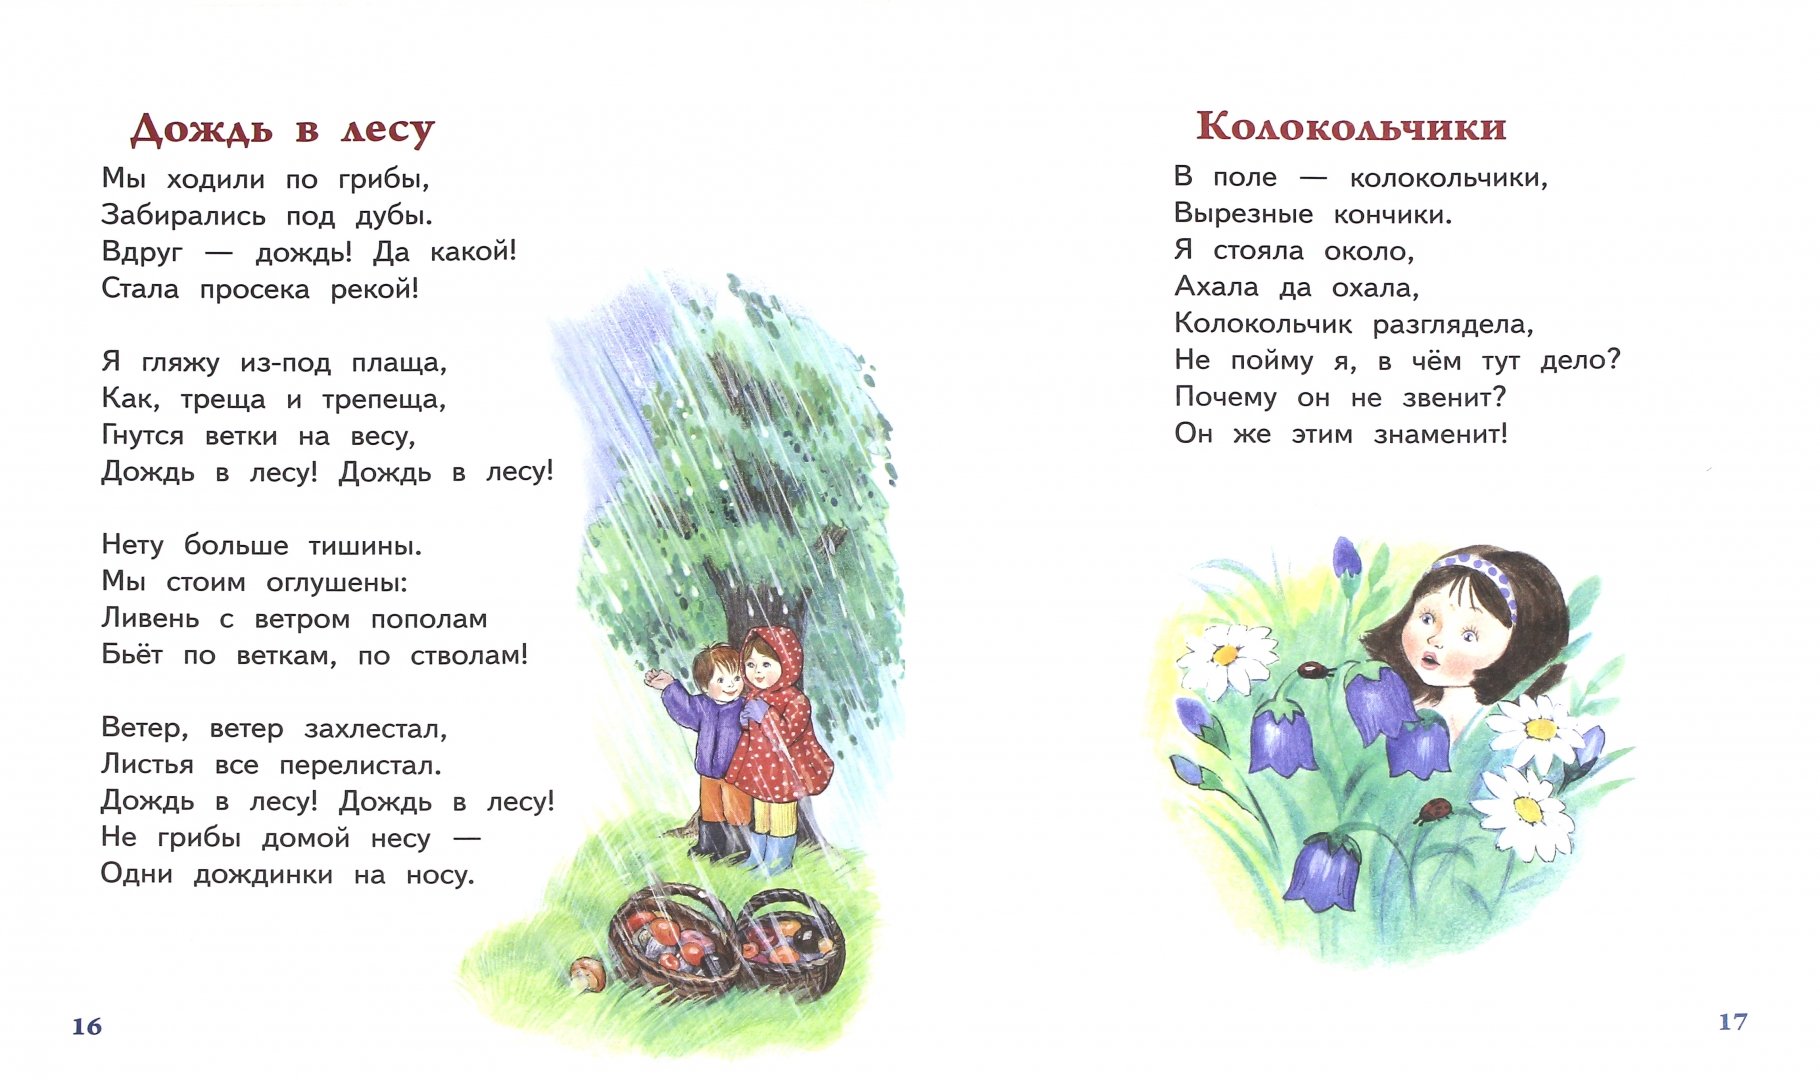 Иллюстрация 1 из 2 для "Игра в стадо" и другие стихи - Агния Барто | Лабиринт - книги. Источник: Лабиринт